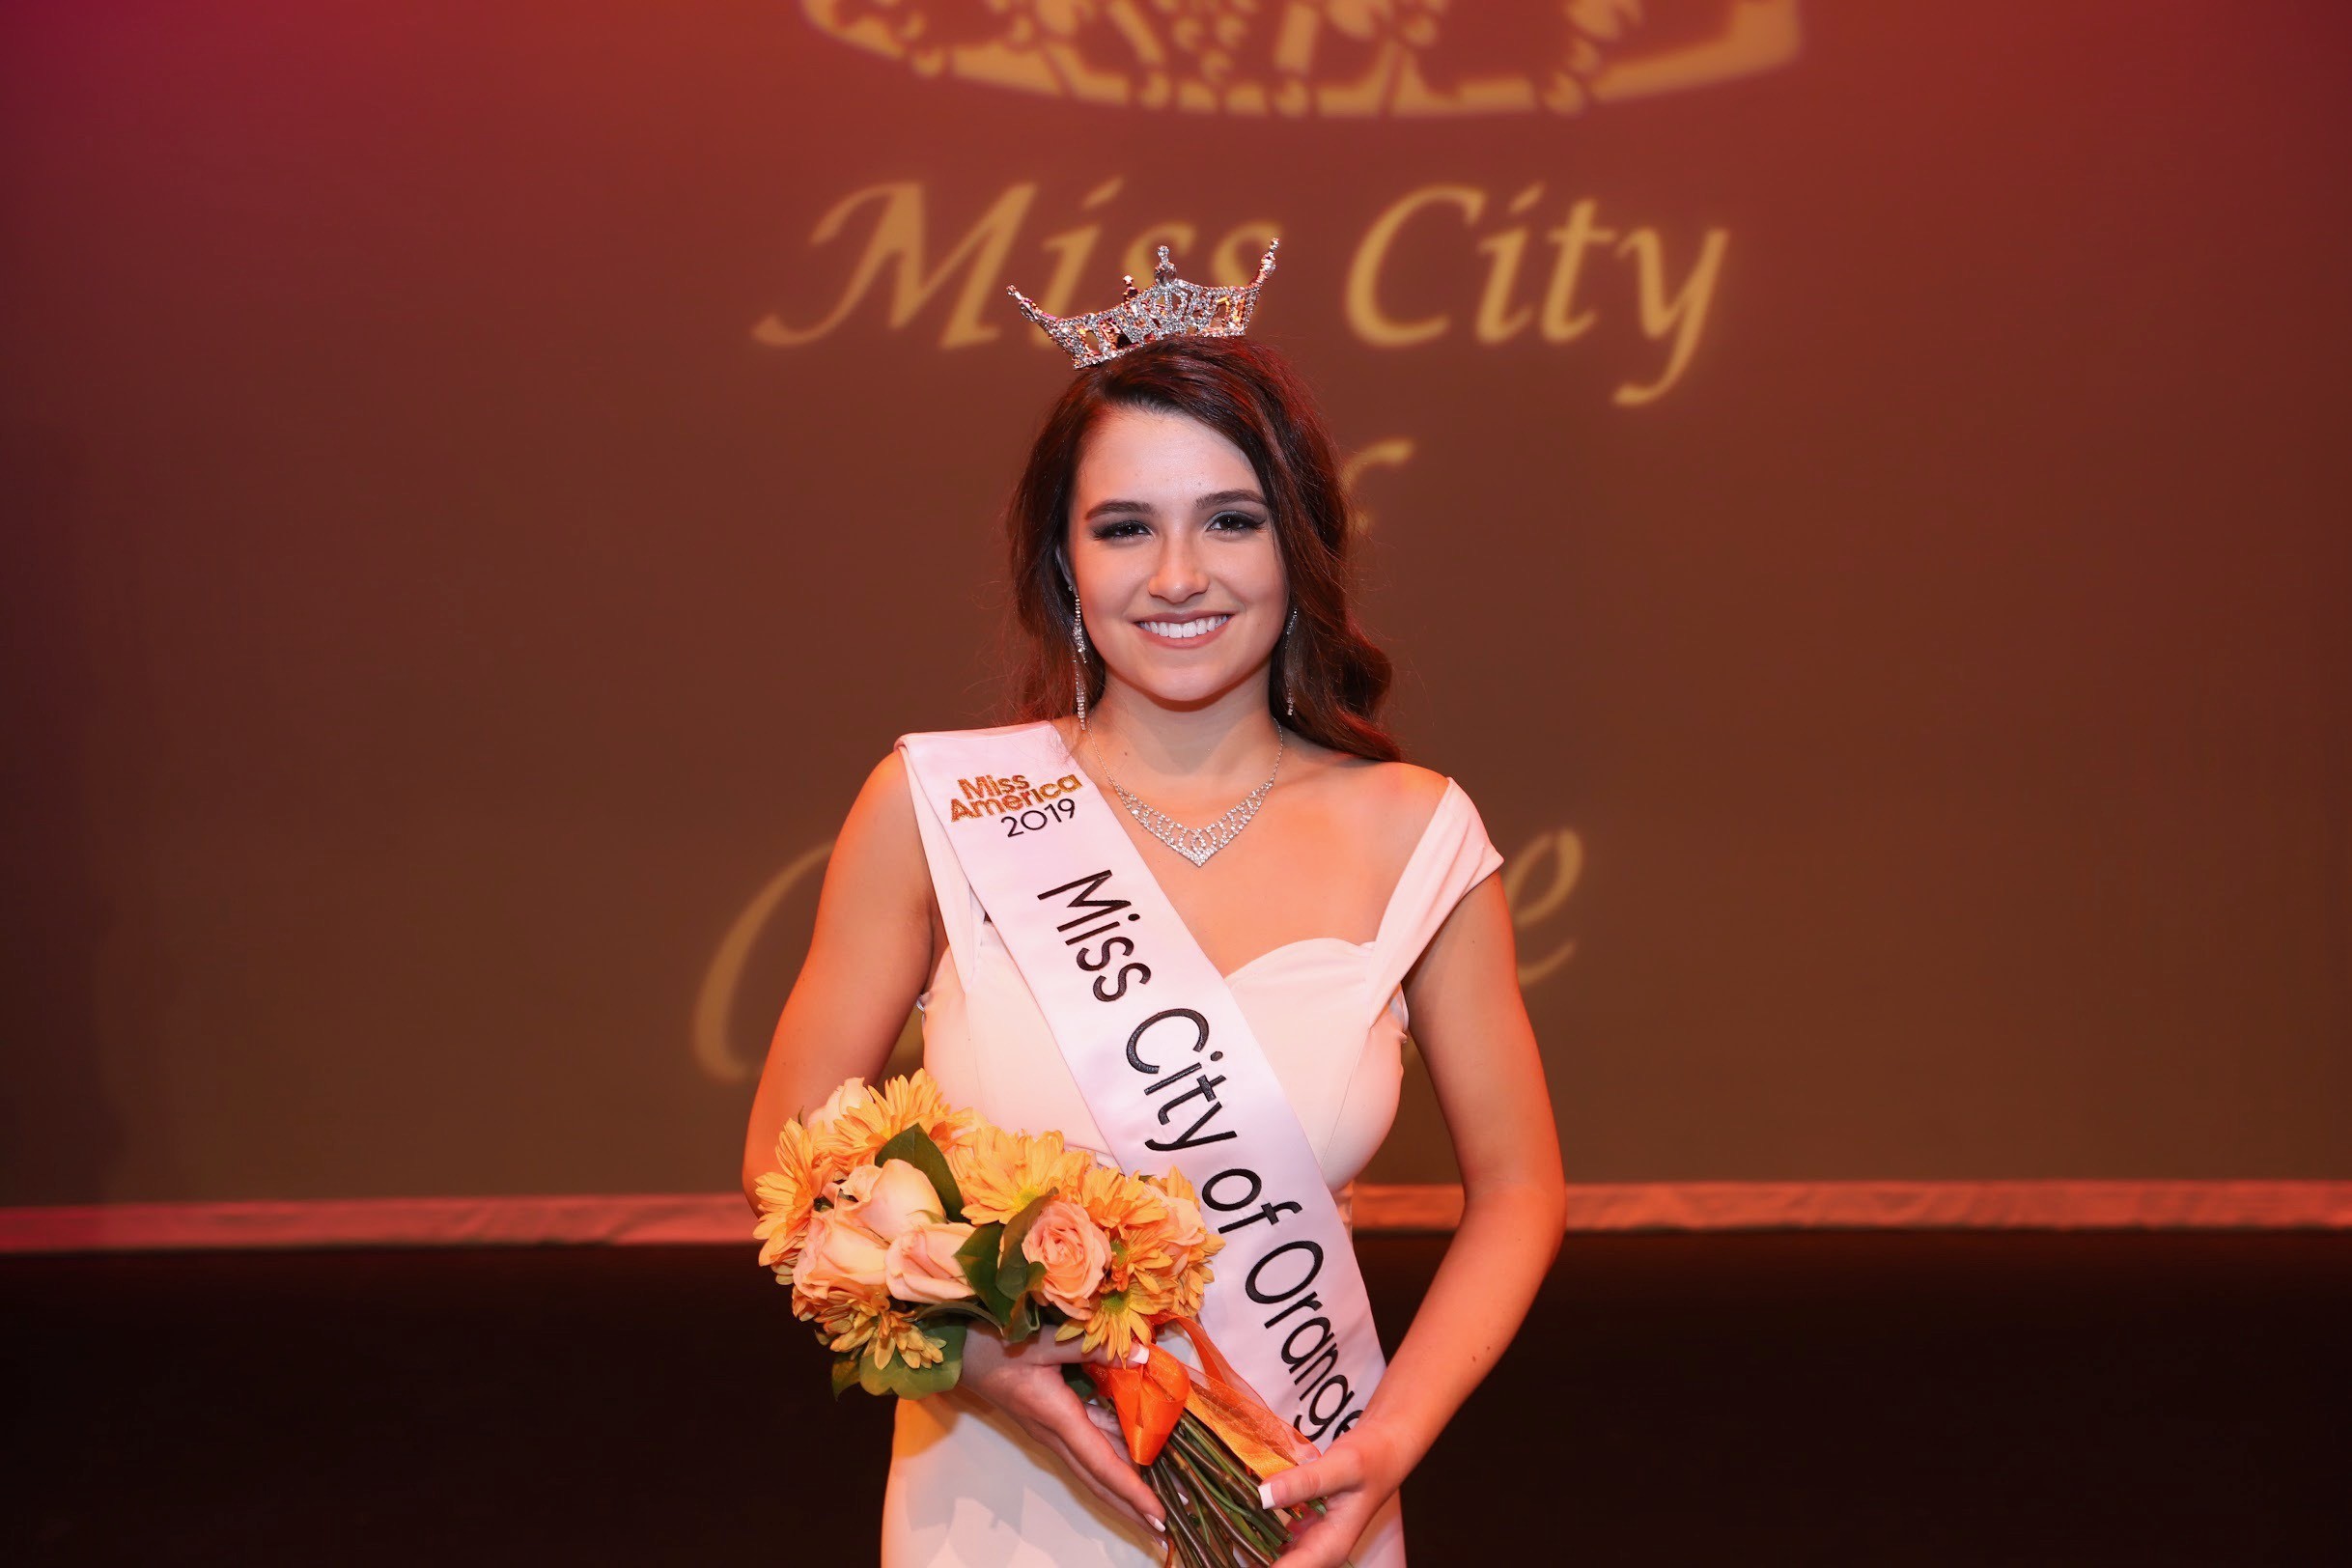 SCC Student Crowned Miss City of Orange.jpg